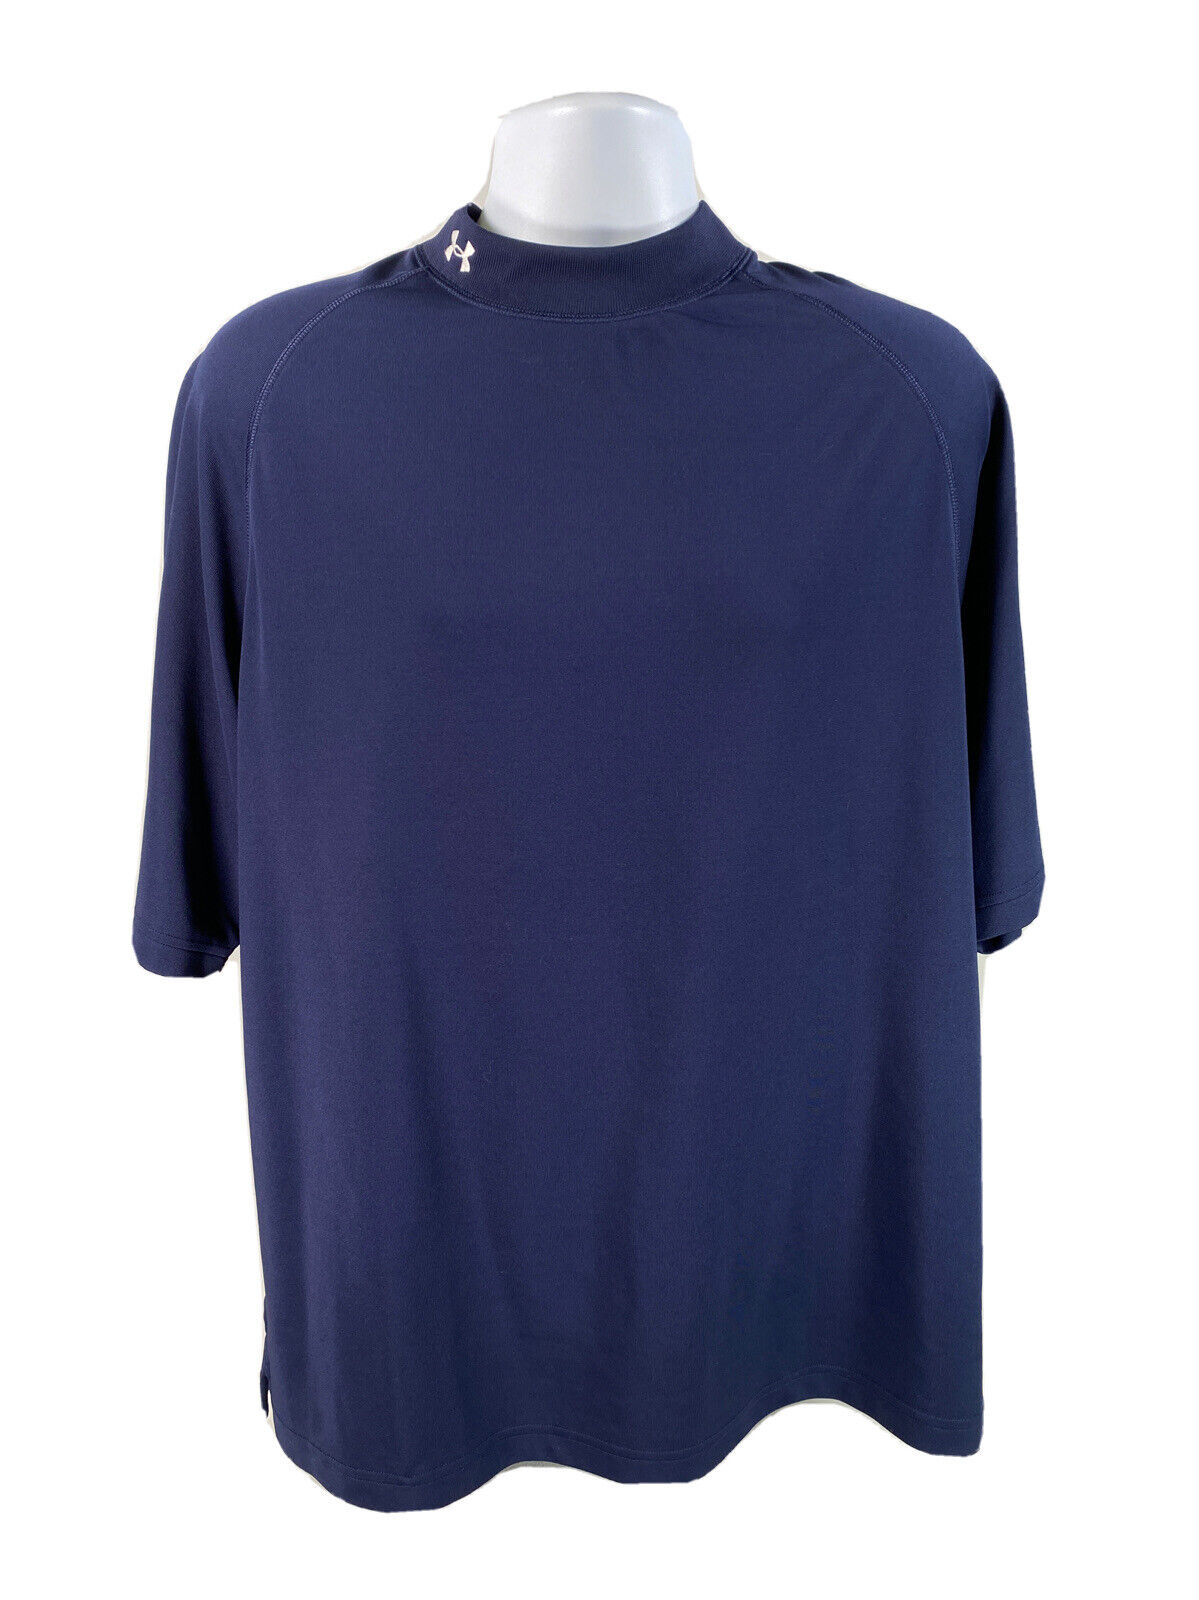 Under Armour Men's Blue Short Sleeve Mocneck Activewear T-Shirt Sz L